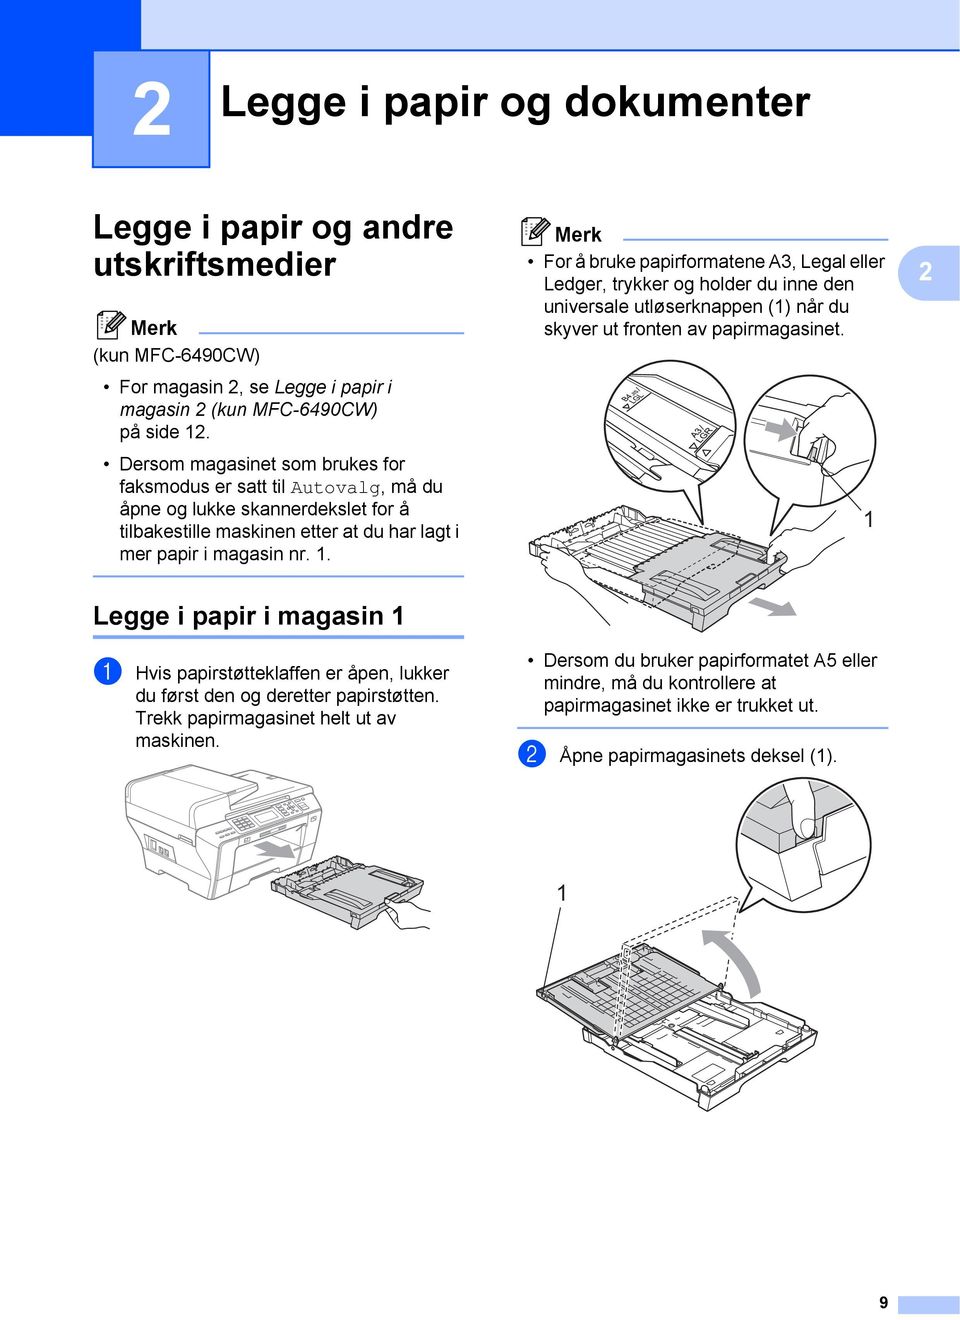 For å bruke papirformatene A3, Legal eller Ledger, trykker og holder du inne den universale utløserknappen (1) når du skyver ut fronten av papirmagasinet.